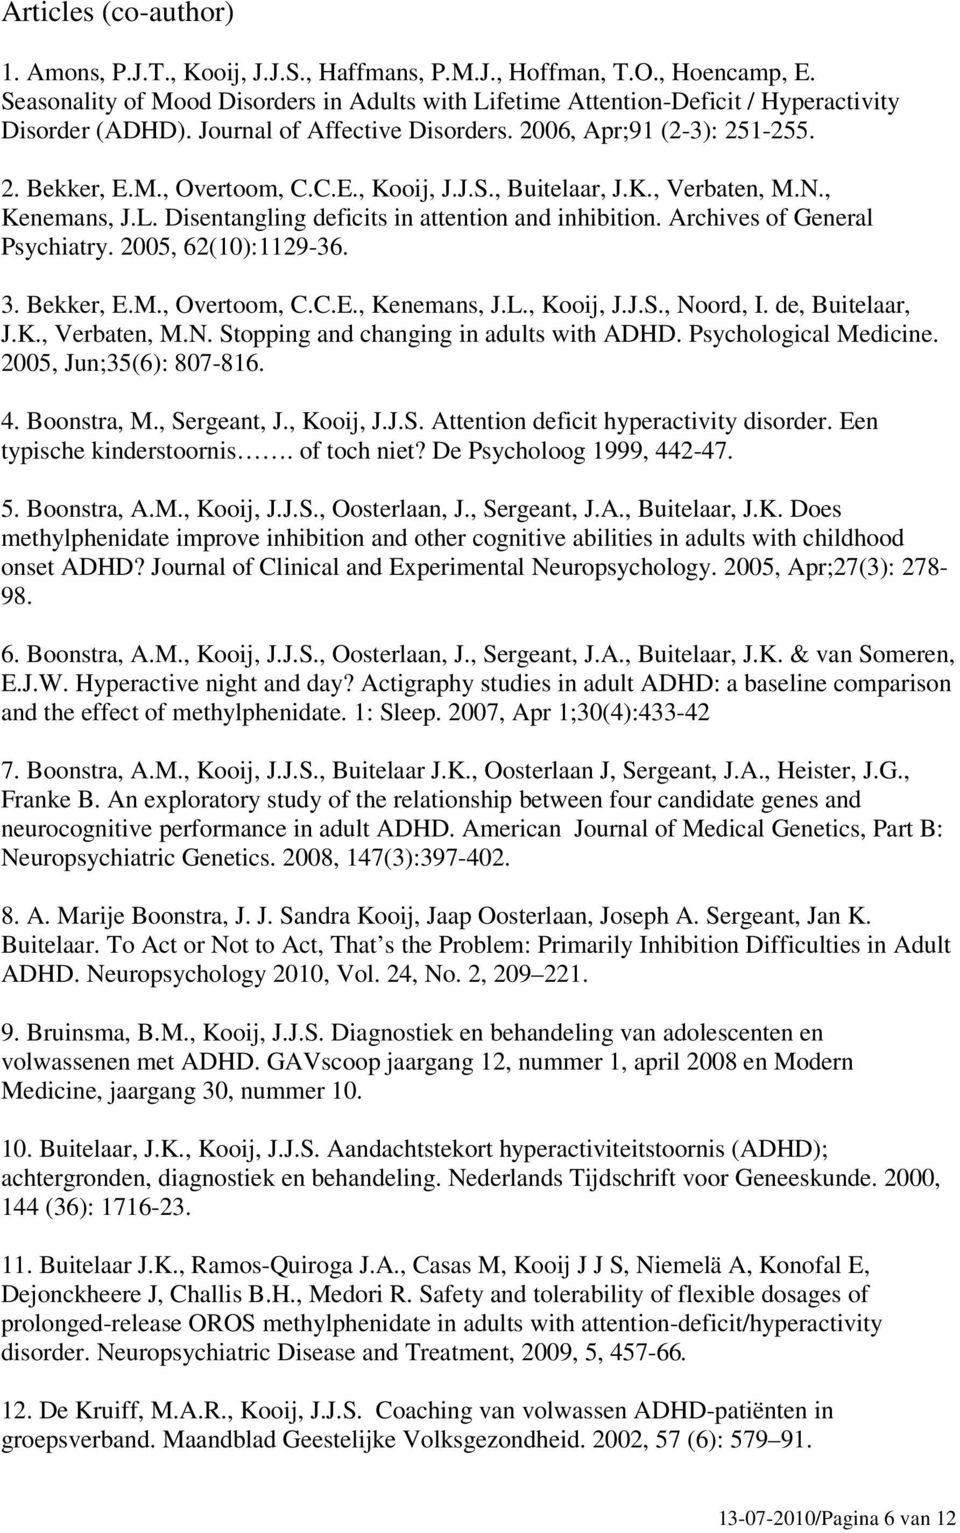 J.S., Buitelaar, J.K., Verbaten, M.N., Kenemans, J.L. Disentangling deficits in attention and inhibition. Archives of General Psychiatry. 2005, 62(10):1129-36. 3. Bekker, E.M., Overtoom, C.C.E., Kenemans, J.L., Kooij, J.